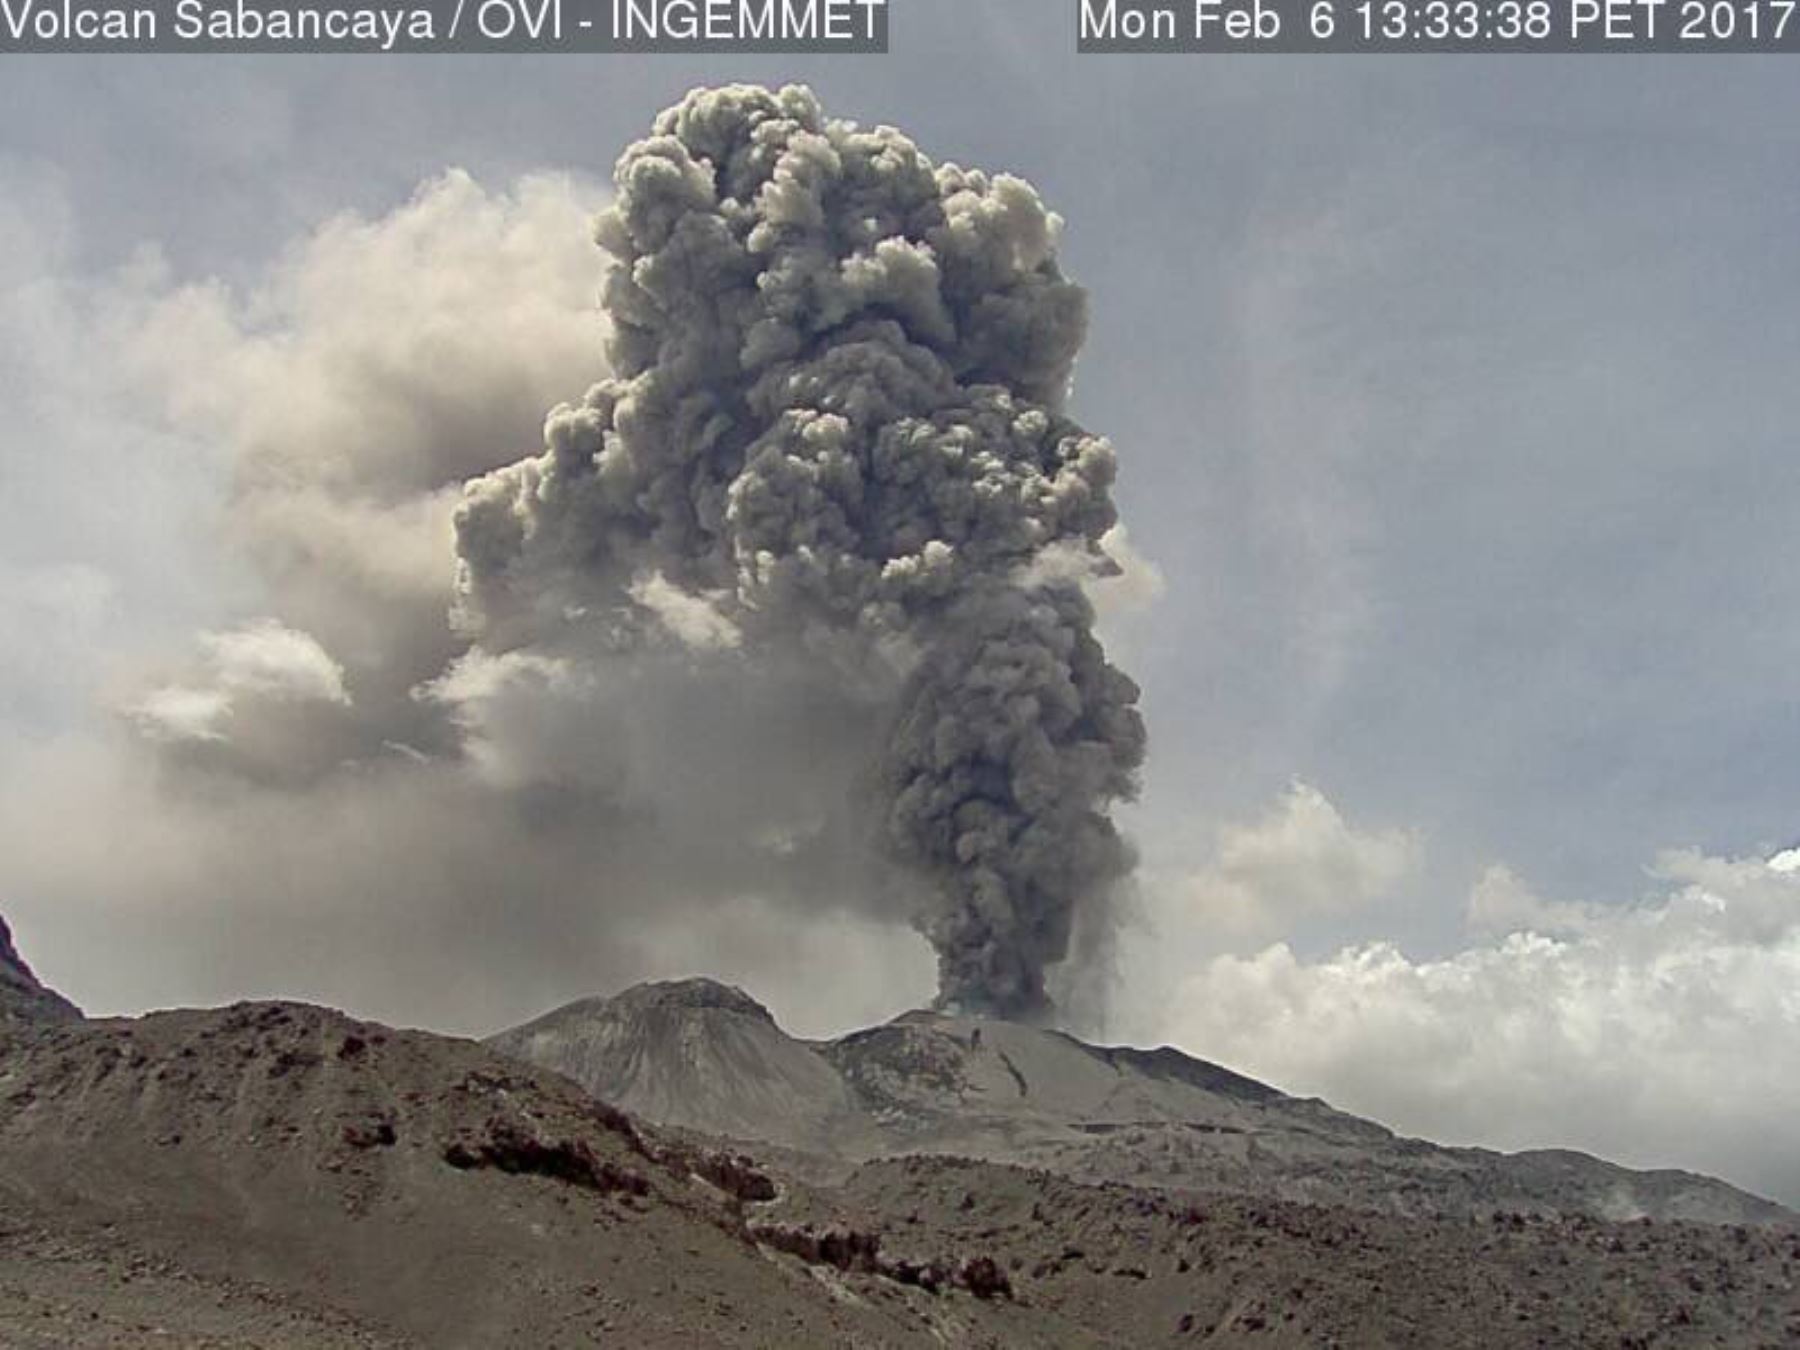 Reciente actividad en el volcán Sabancaya.